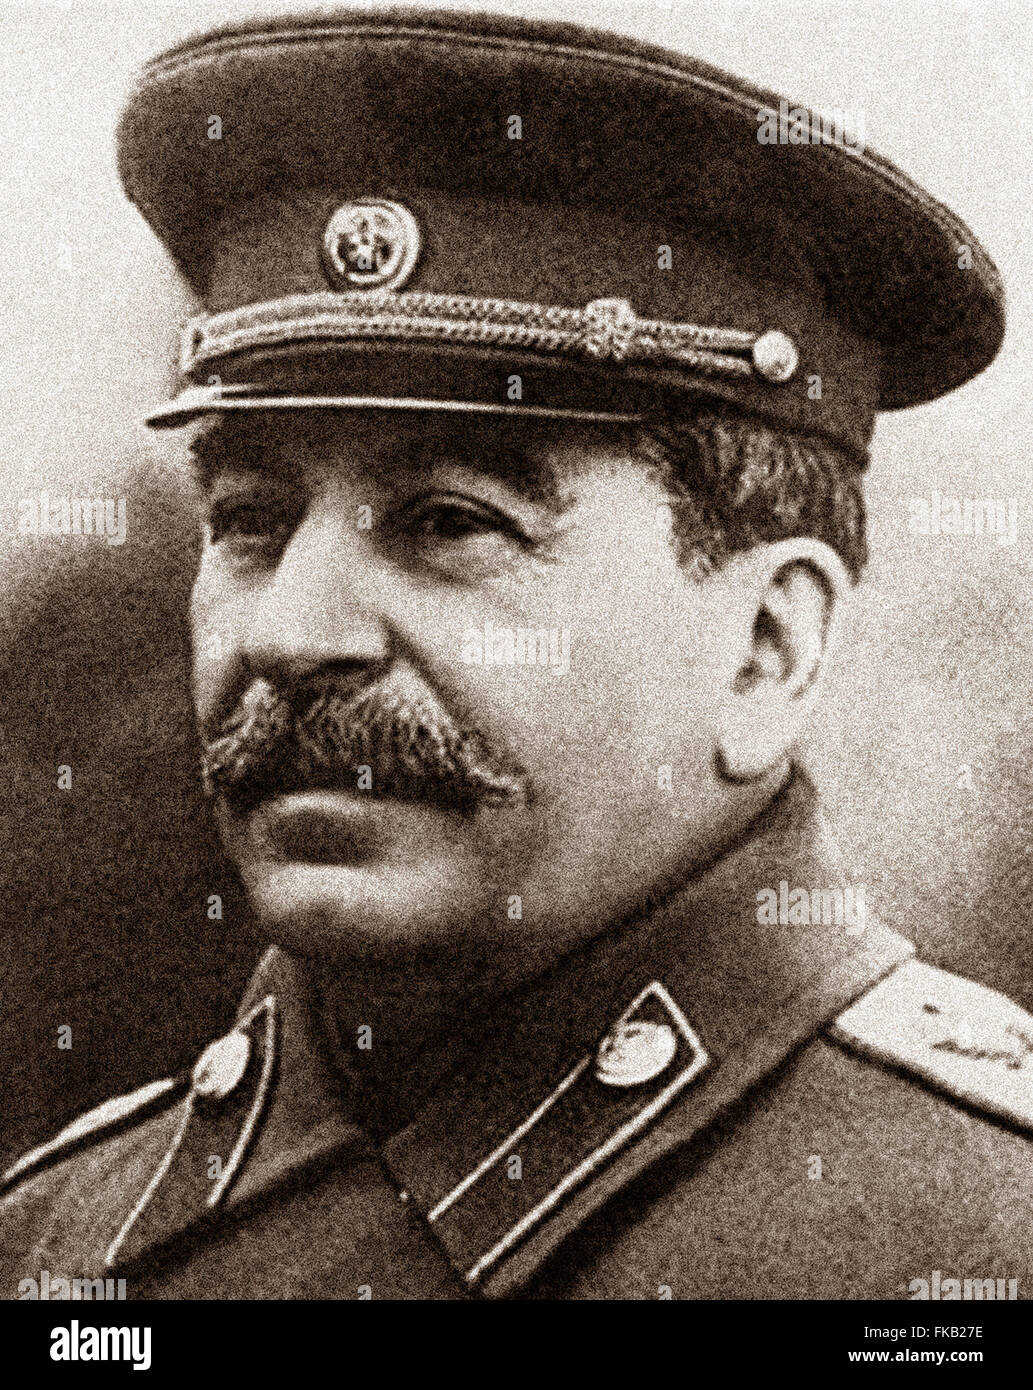 Joseph Vissarionovich Stalin fue el Primer Ministro de la Unión Soviética a partir del 6 de mayo de 1941 hasta su muerte en el 5 de marzo de 1953. 1942 imagen desde Archivos de Prensa - Servicio de retrato antiguo retrato de prensa mesa Foto de stock